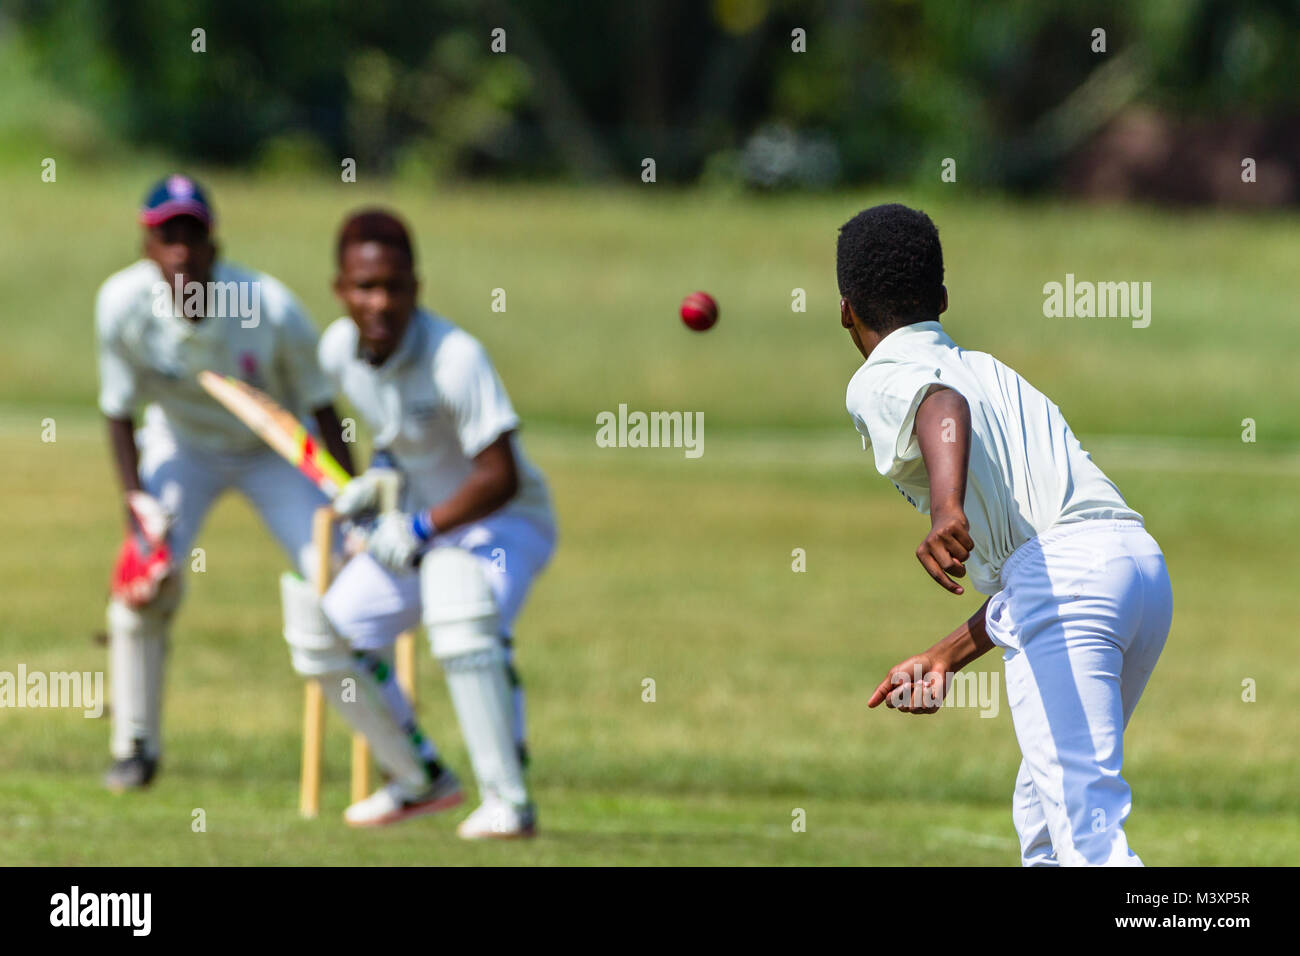 La acción del juego de cricket closeup abstracta no identificado bowler batsman wicket keeper. Foto de stock